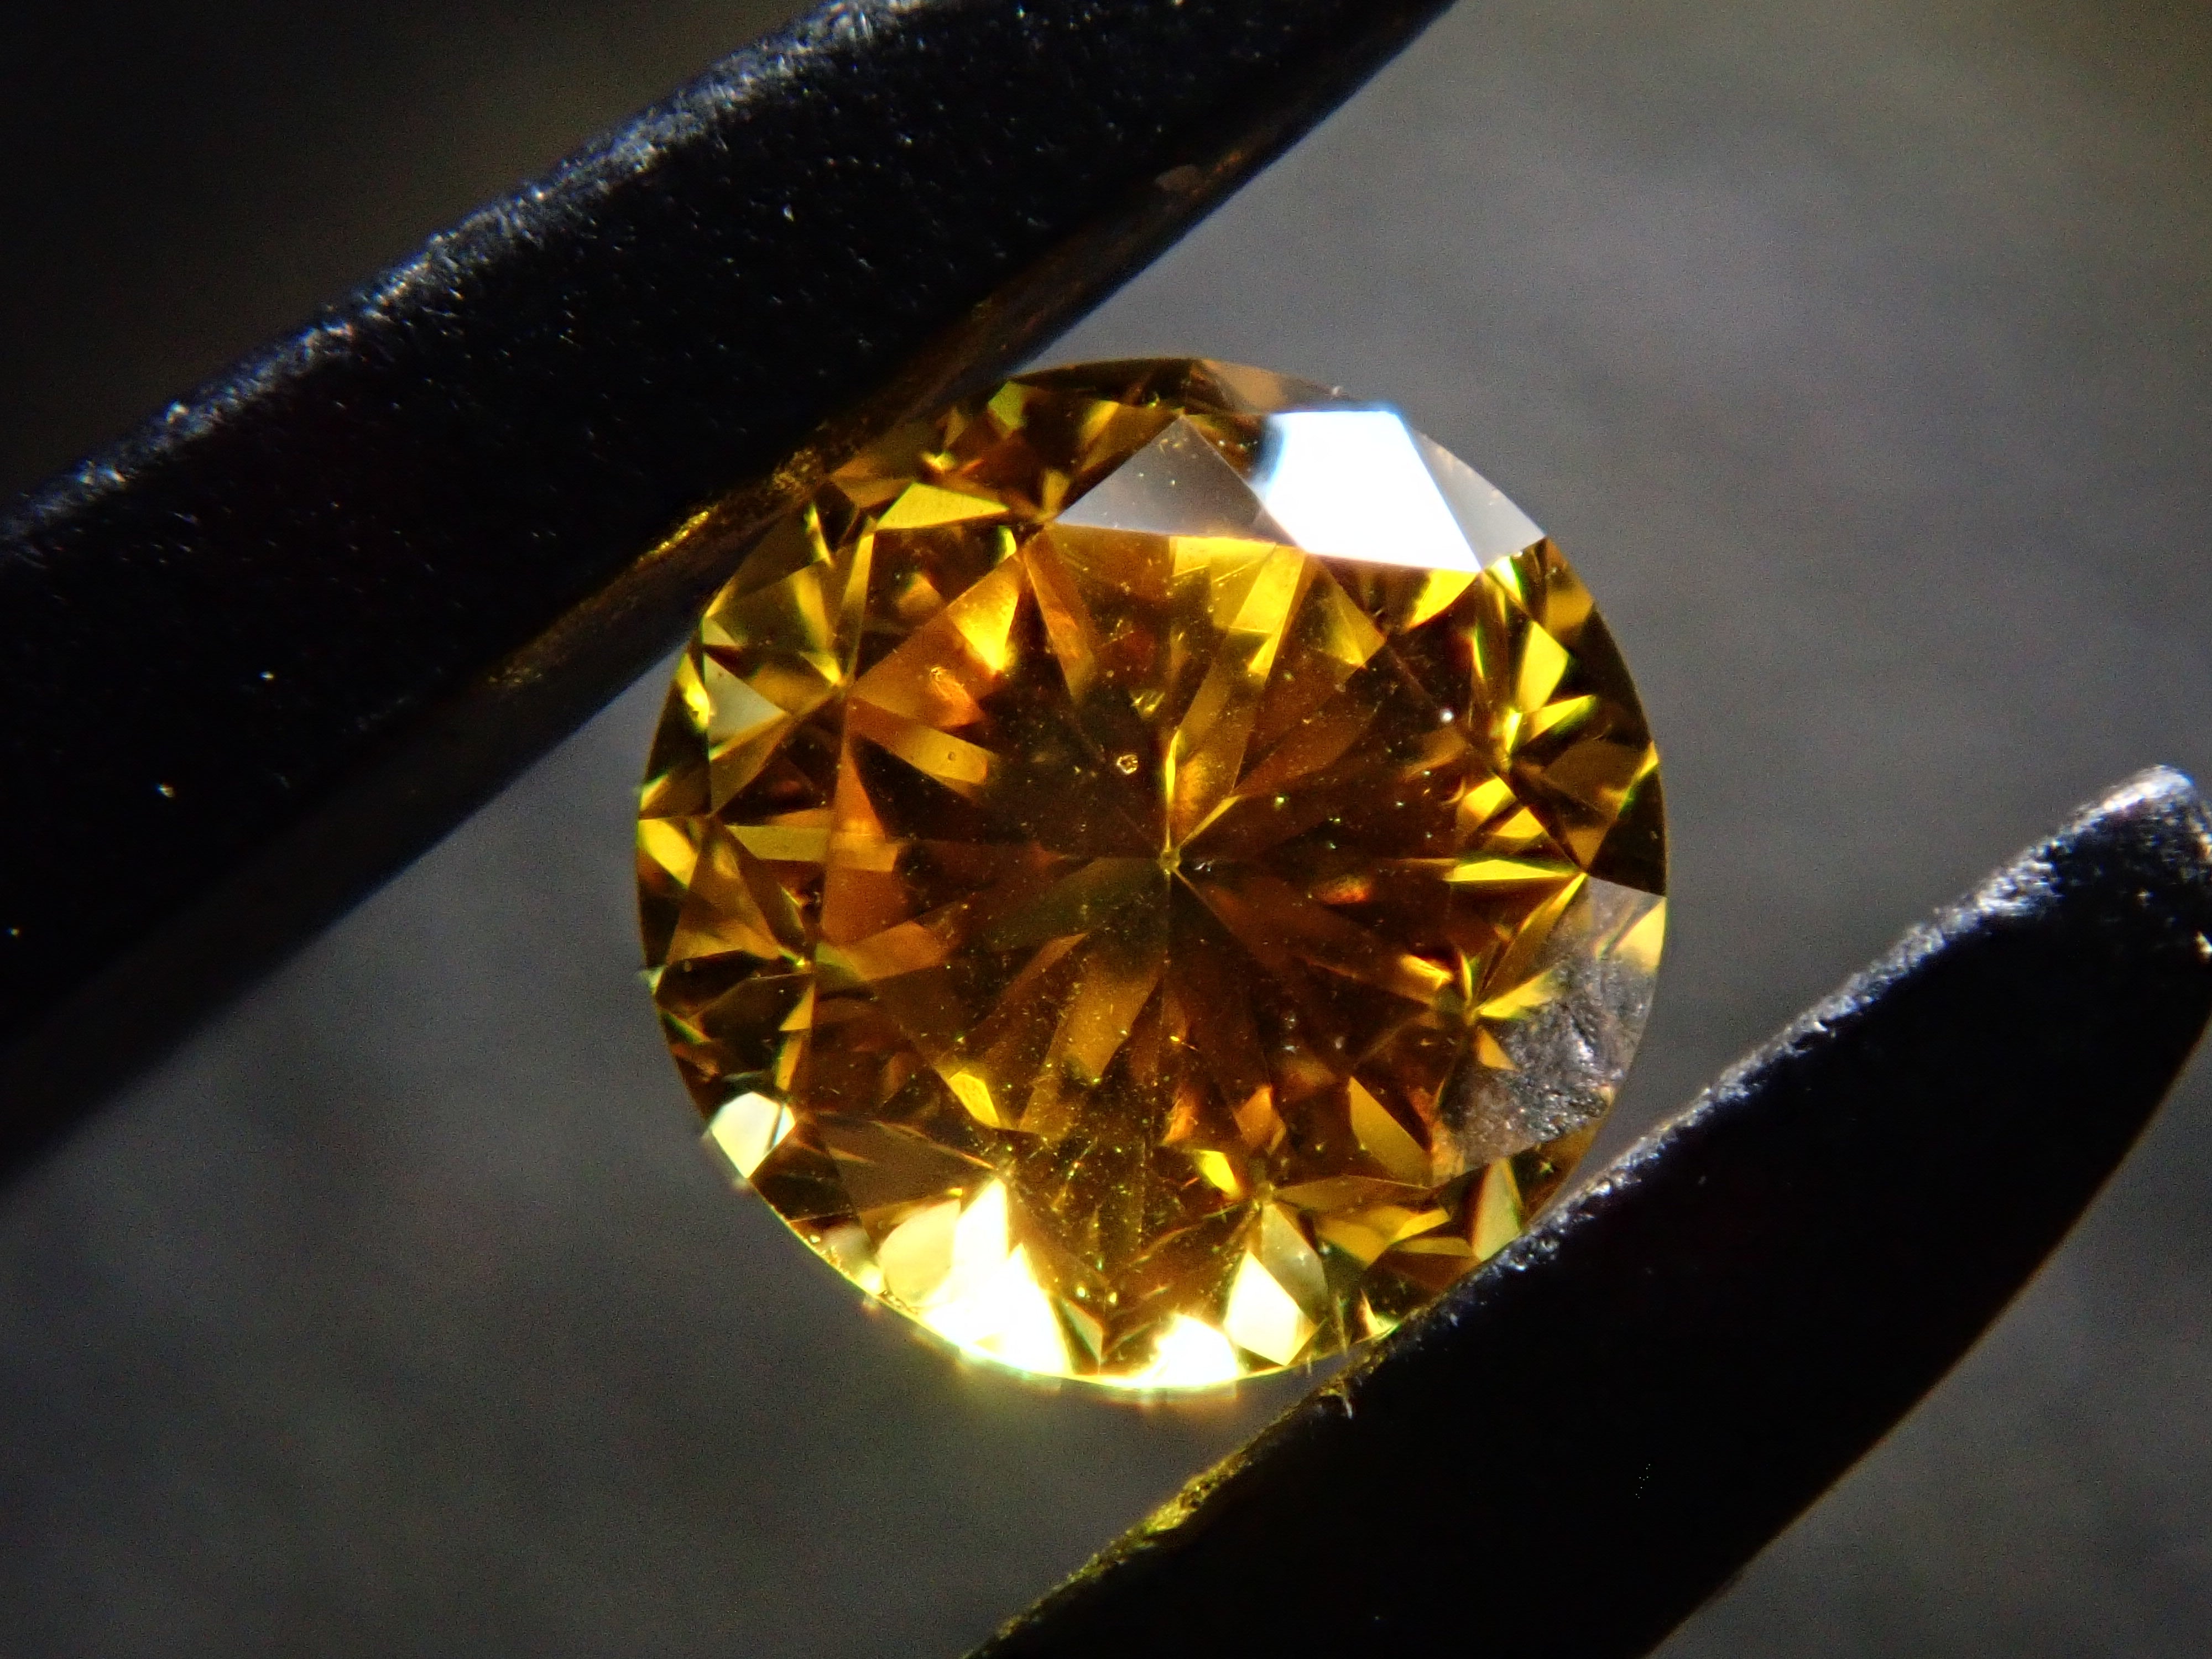 イエローダイヤモンド 0.126ctルース(FANCY VIVID ORANGY YELLOW, SI-2)